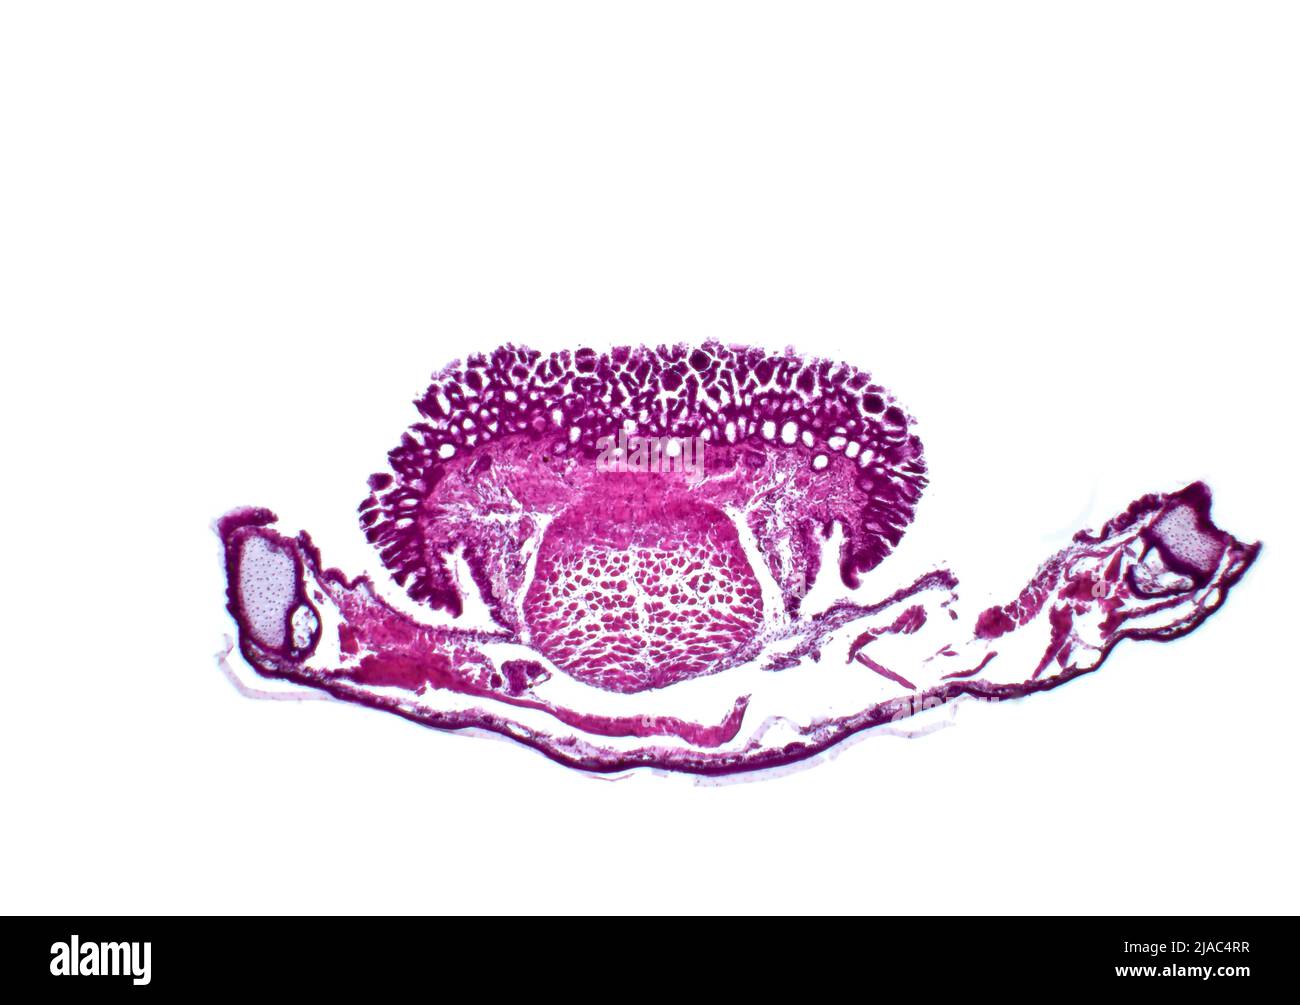 Zunge und Unterkiefer eines Frosches (Pelophylax ridibundus), Lichtmikroskopie. Hämatoxylin- und Eosin-Färbung. Stockfoto